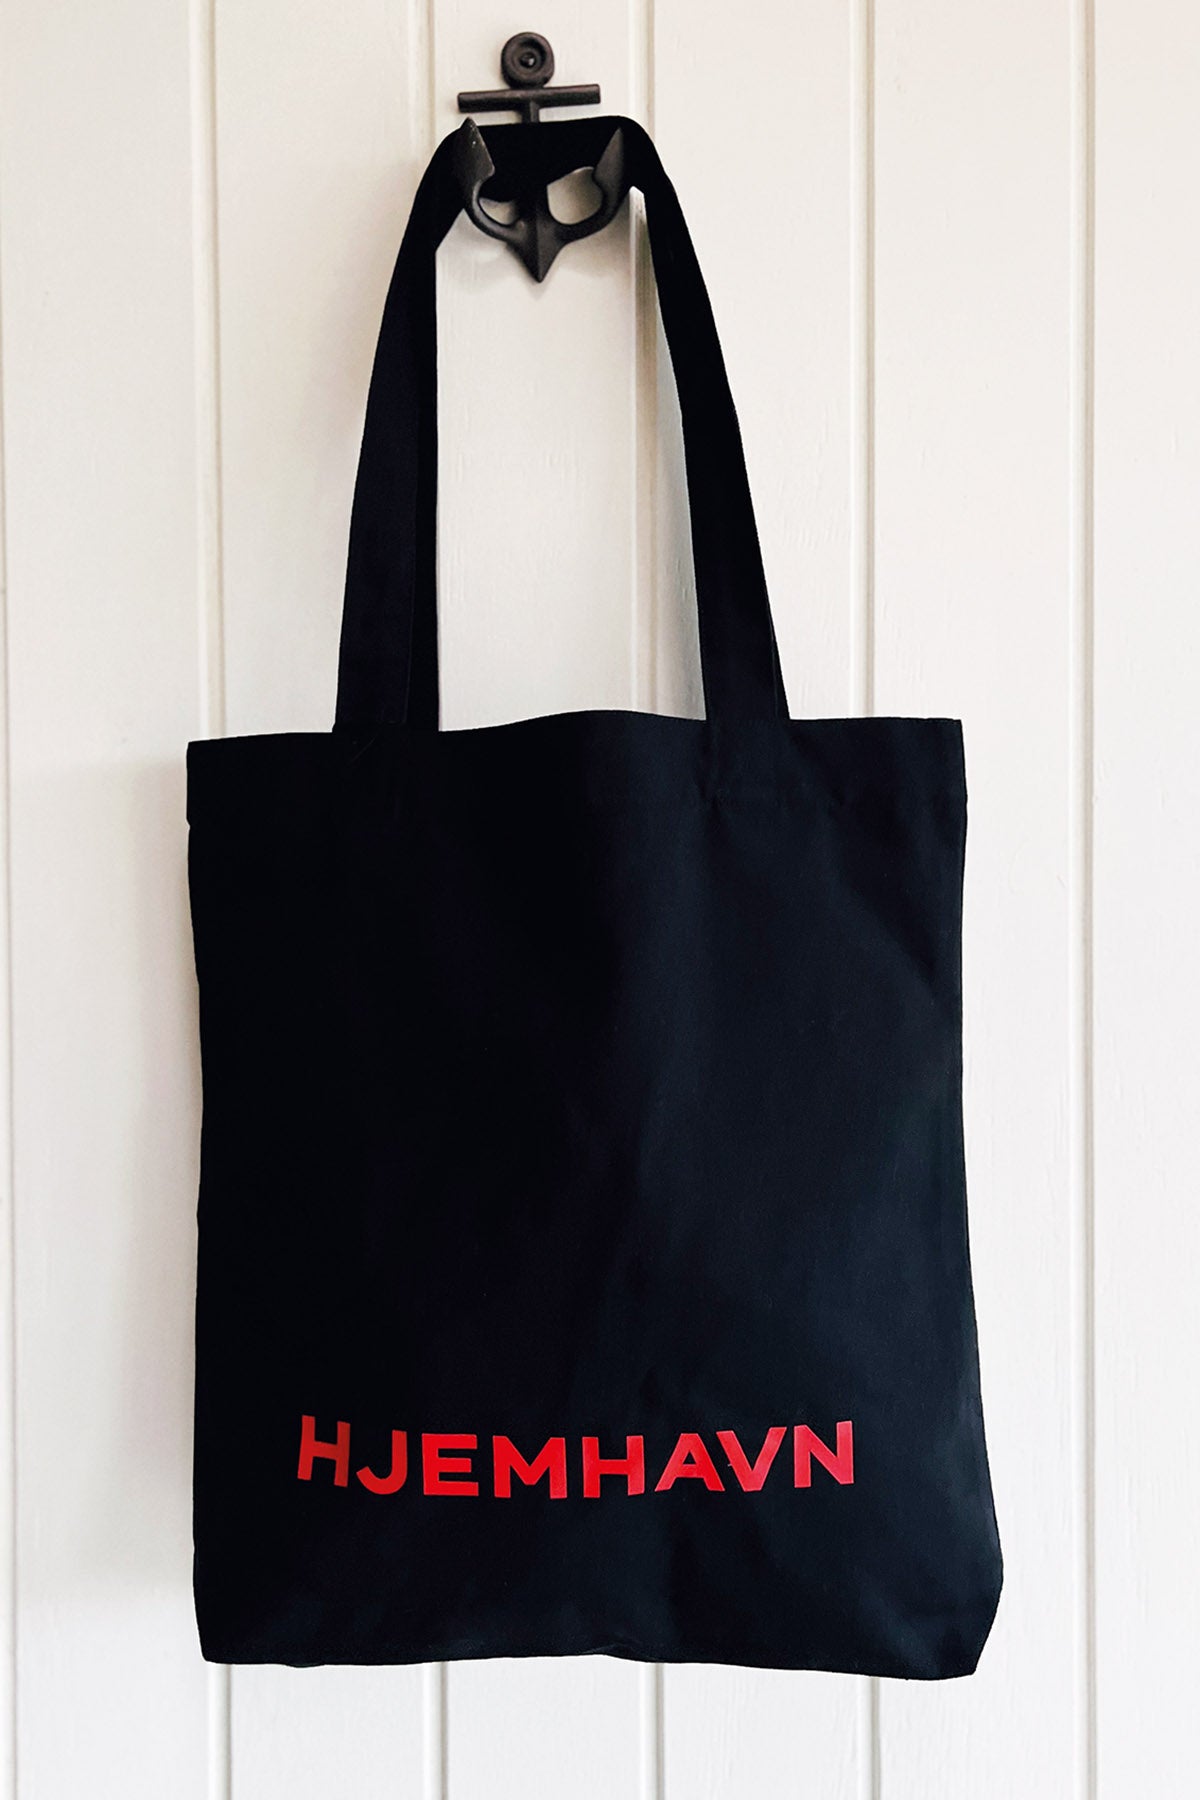 Shopping Bag "Hjemhavn" - Recycled